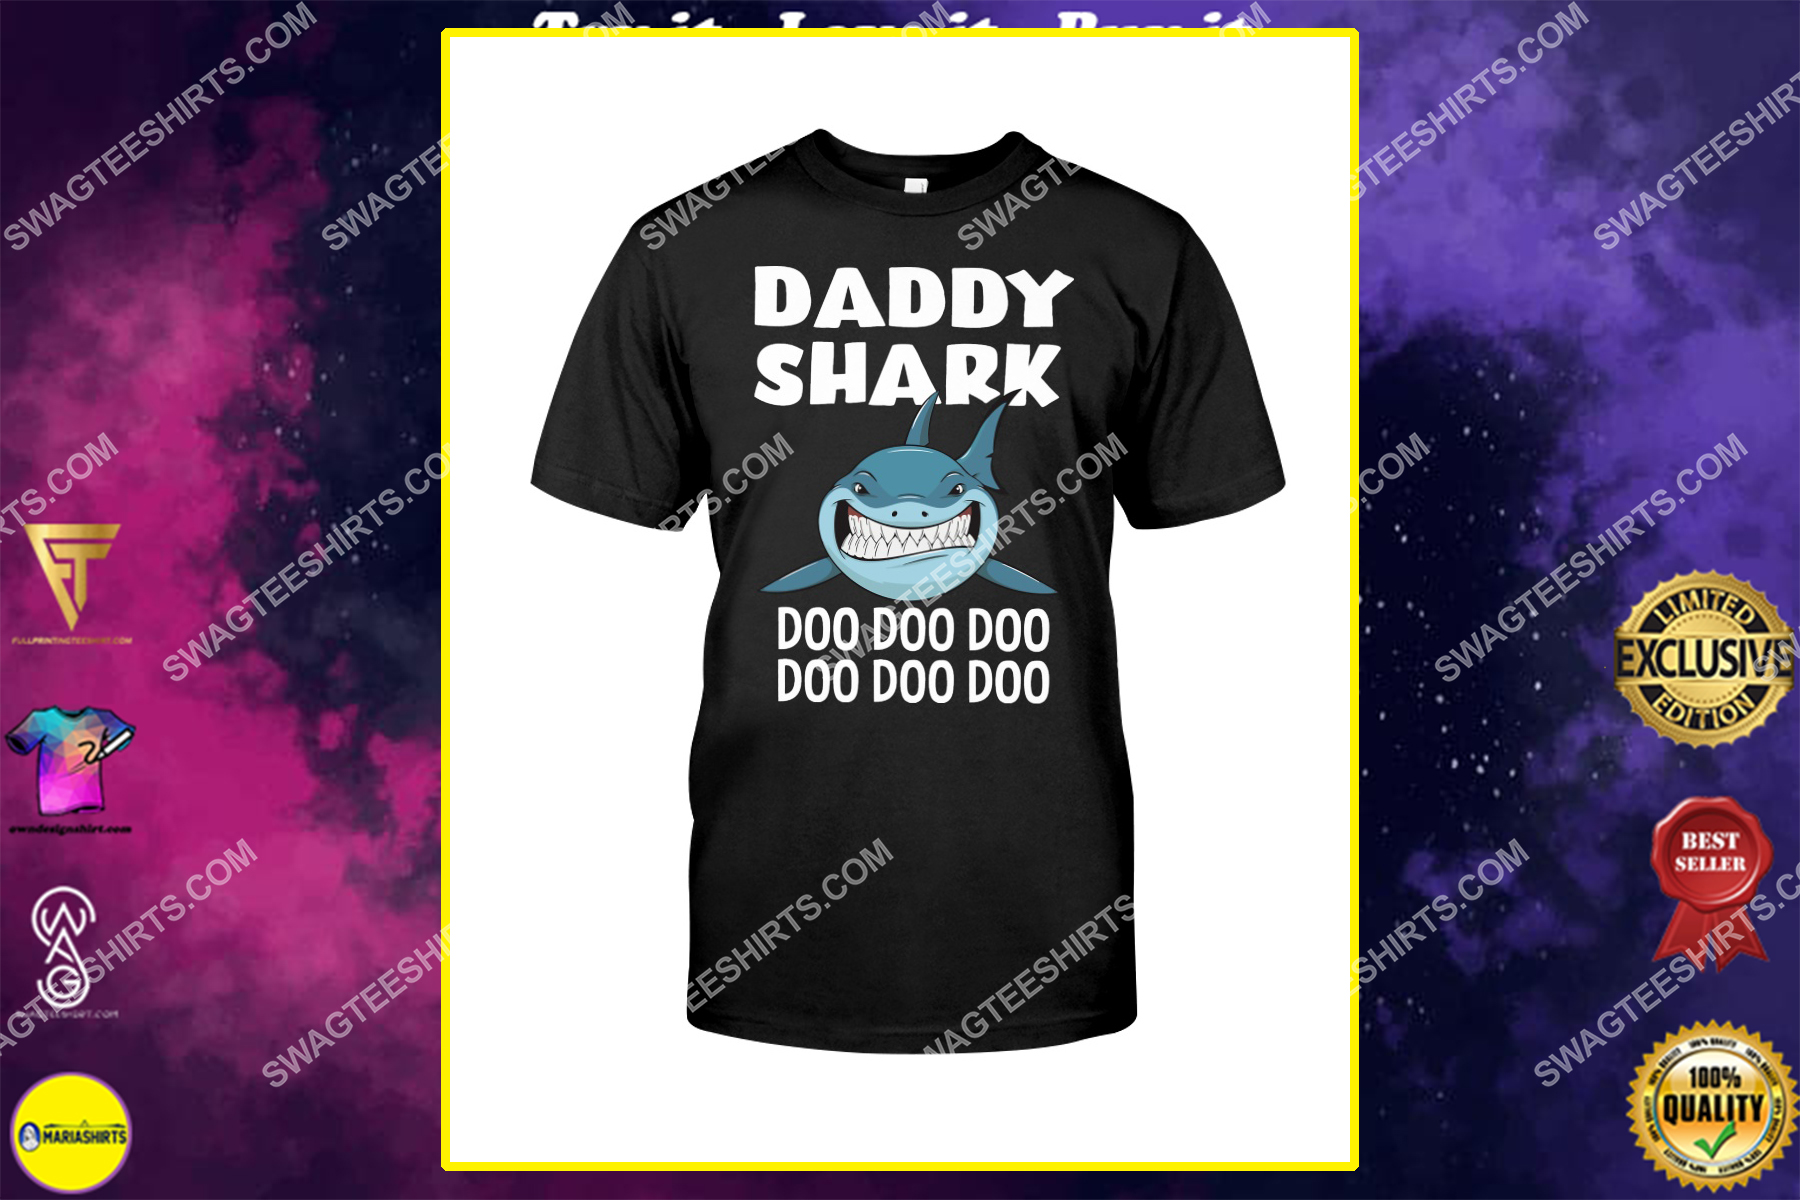 daddy shark doo doo doo fathers day shirt